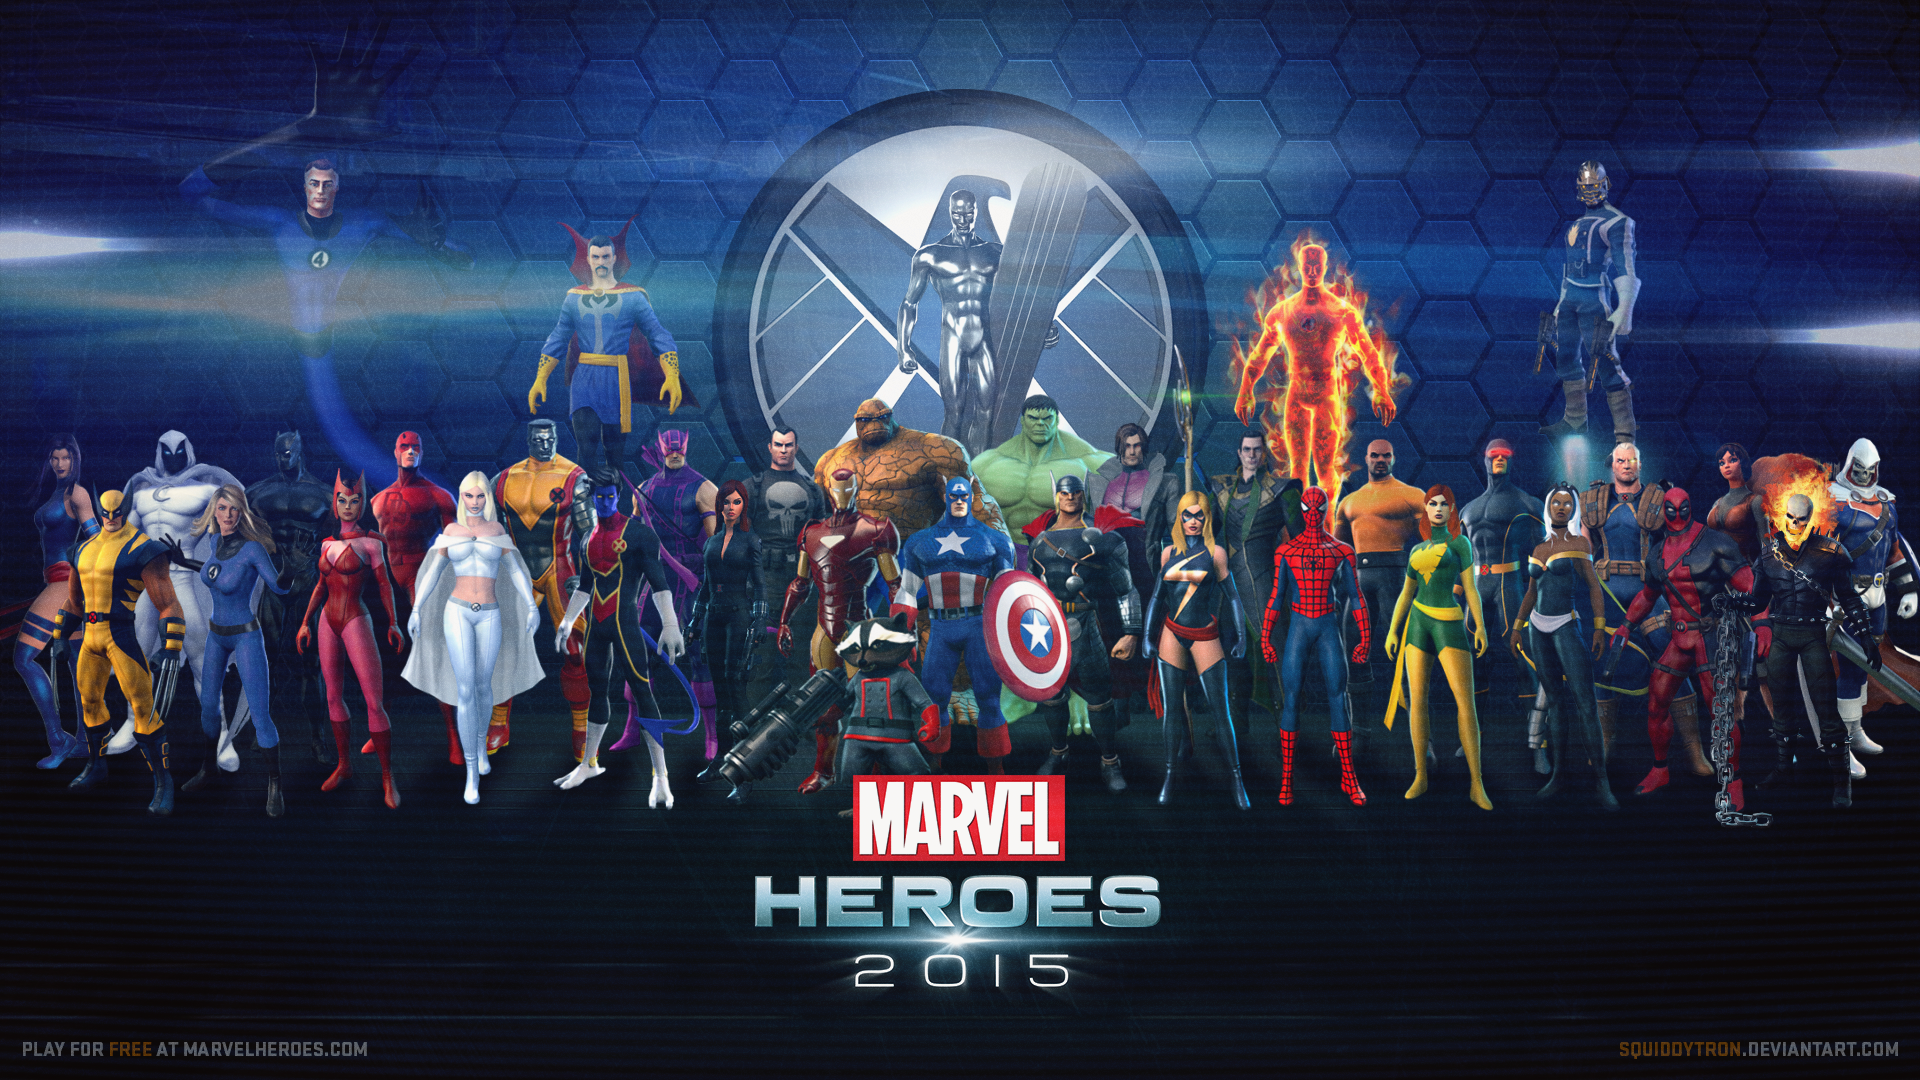 Marvel Heroes Wallpaper UPDATED w STAR LORD   Marvel Heroes 2016